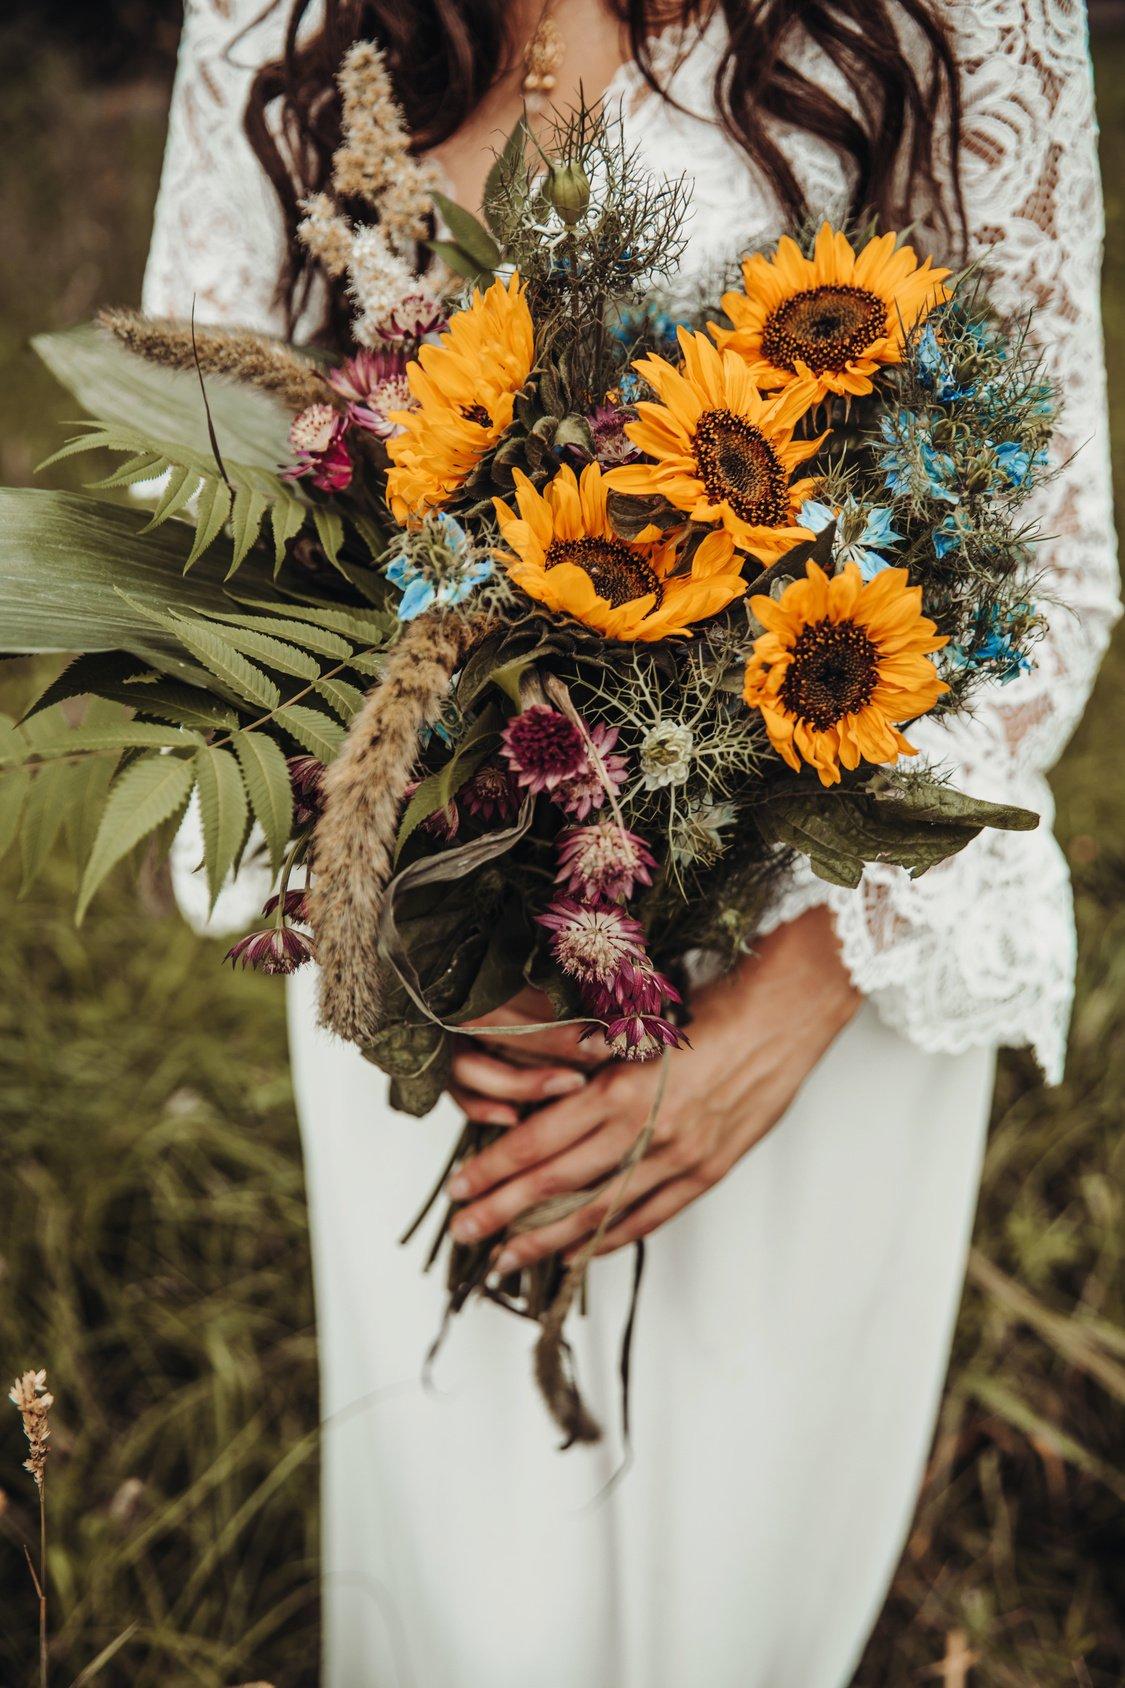 Best Bridal Bouquet Ideas